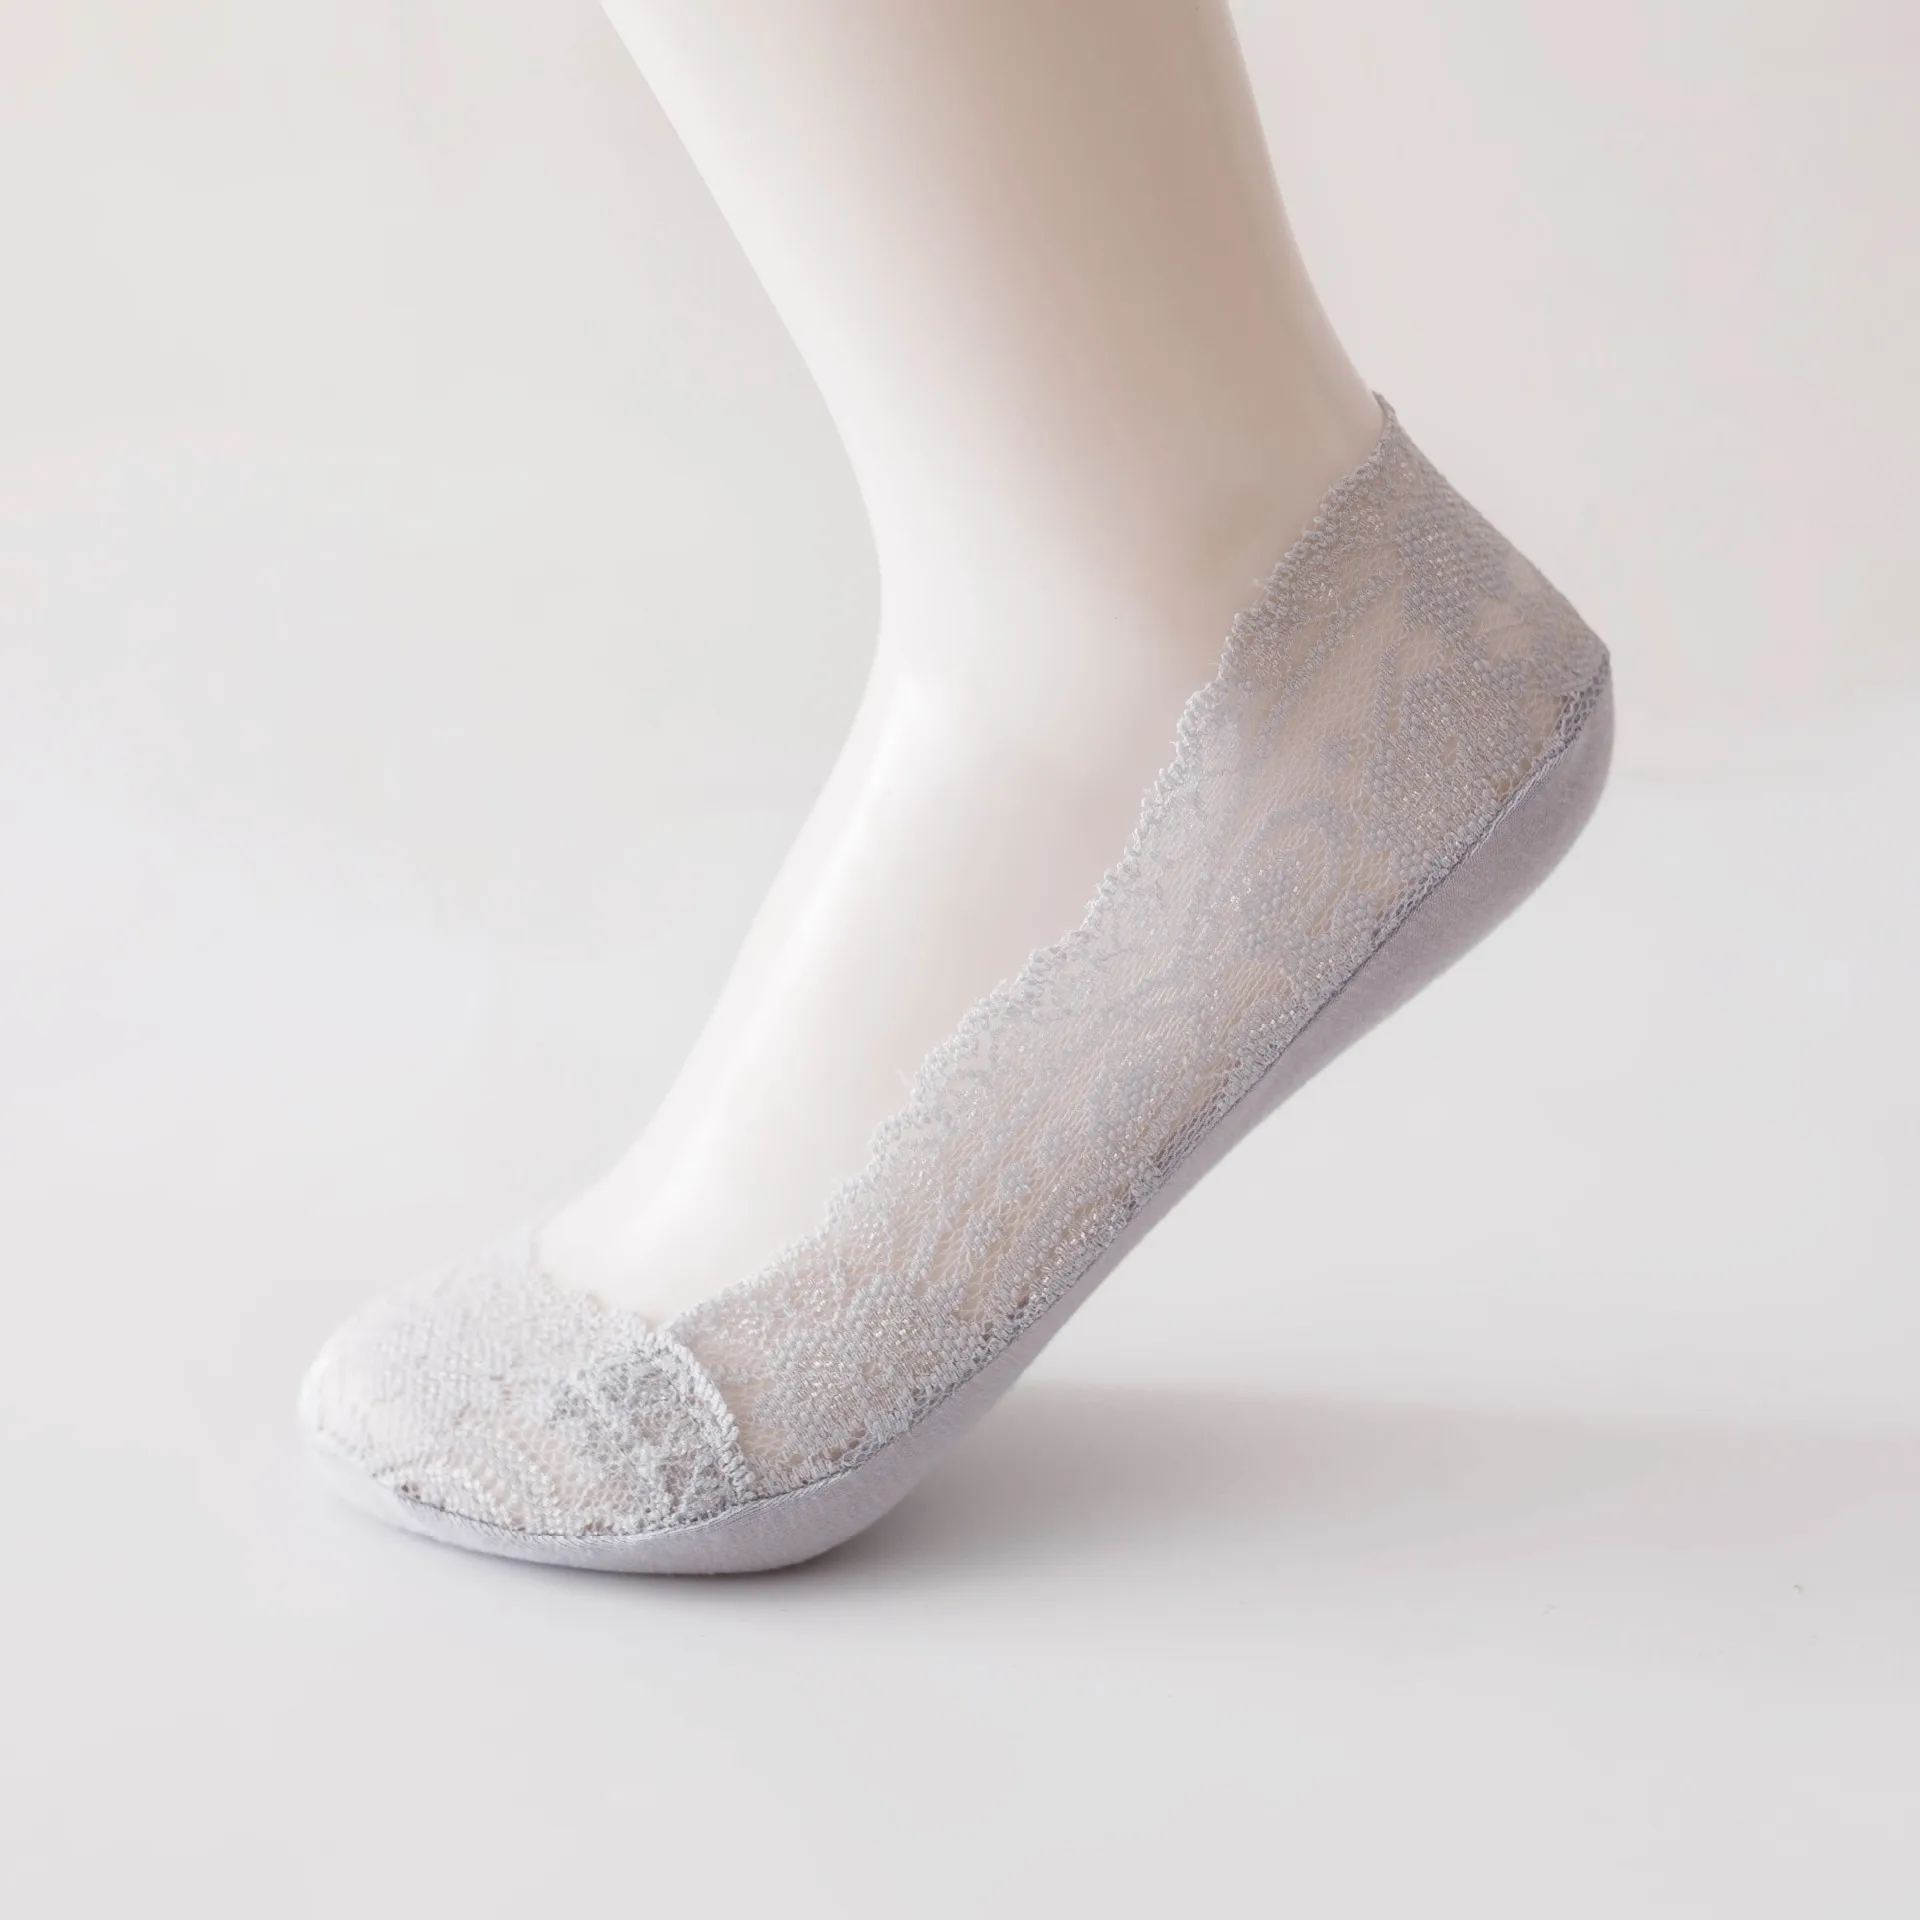 20 пара/лот; летние хлопковые женские короткие носки; модные носки; тапочки для девочек; удобные повседневные женские носки на высоком каблуке - Цвет: (1) gray 20pair